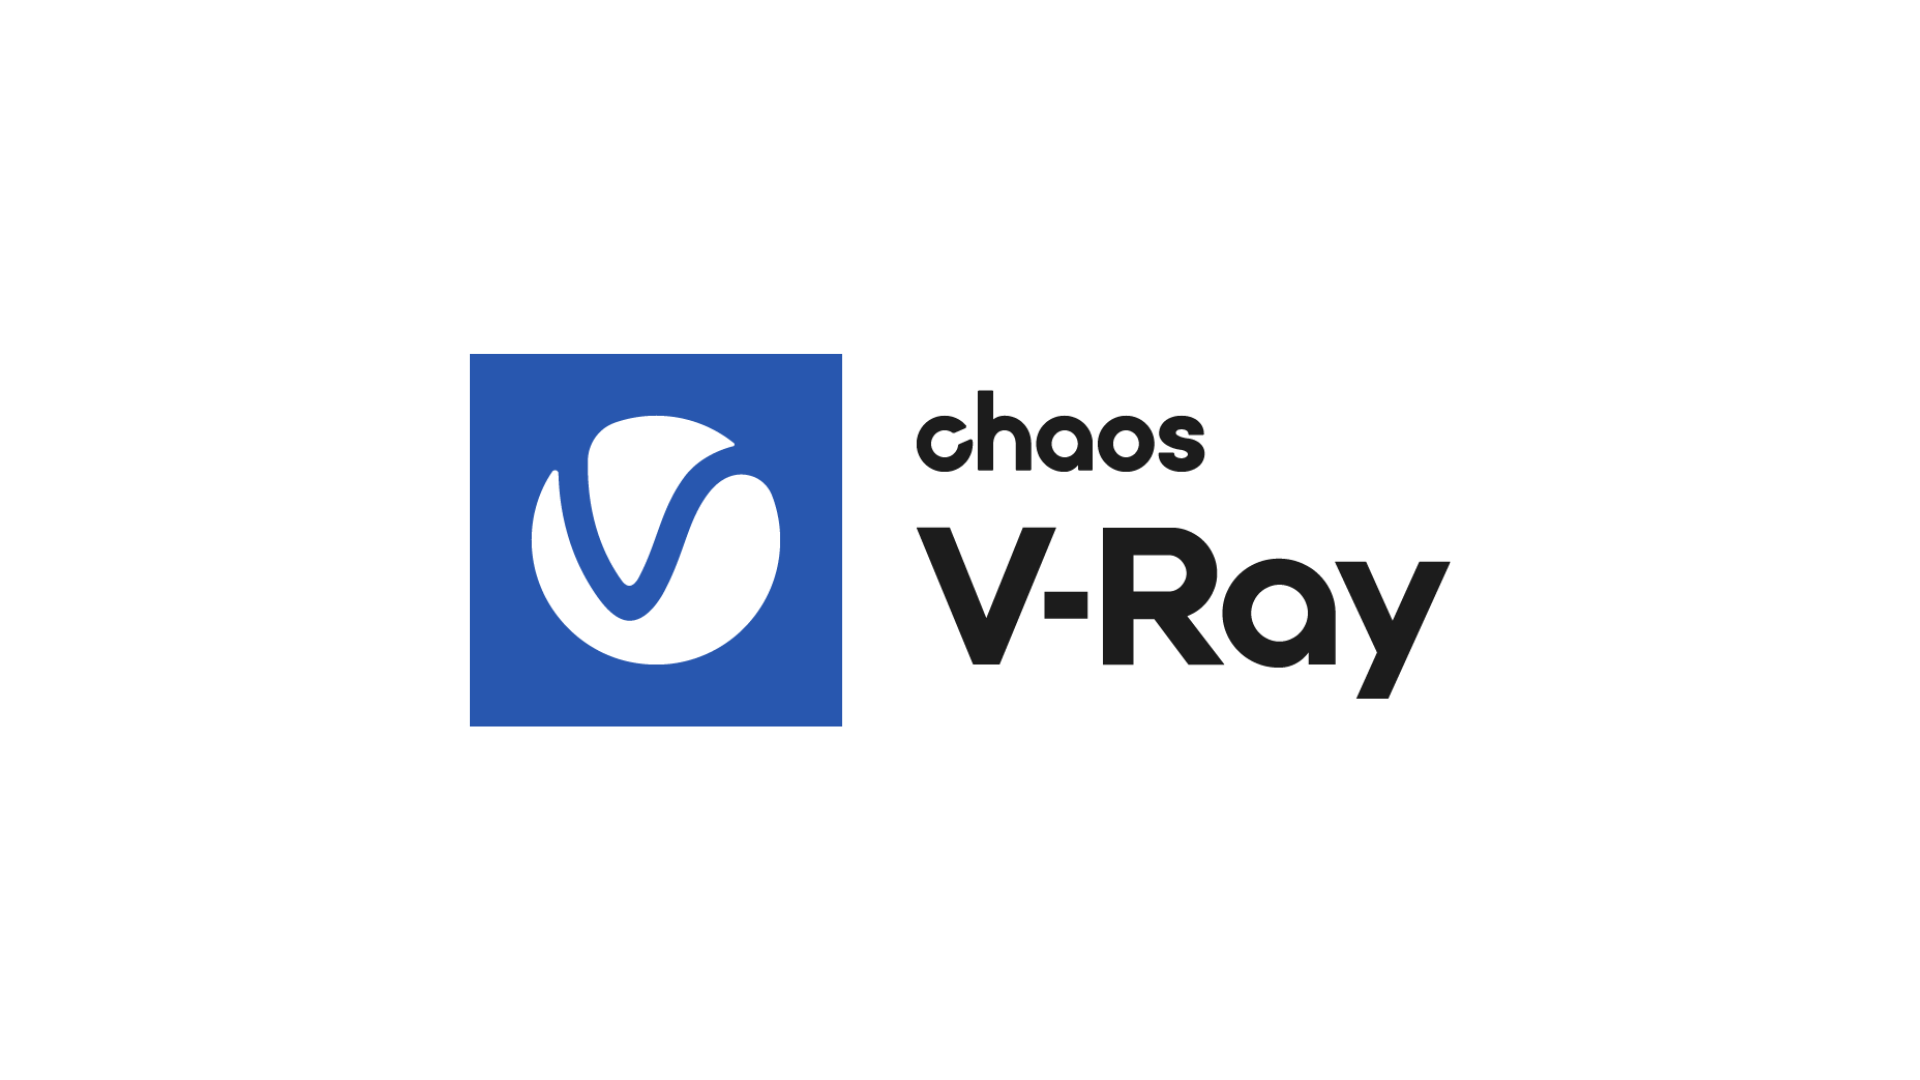 Chaos V-Ray Logo - 3ds Max, Maya, Revit